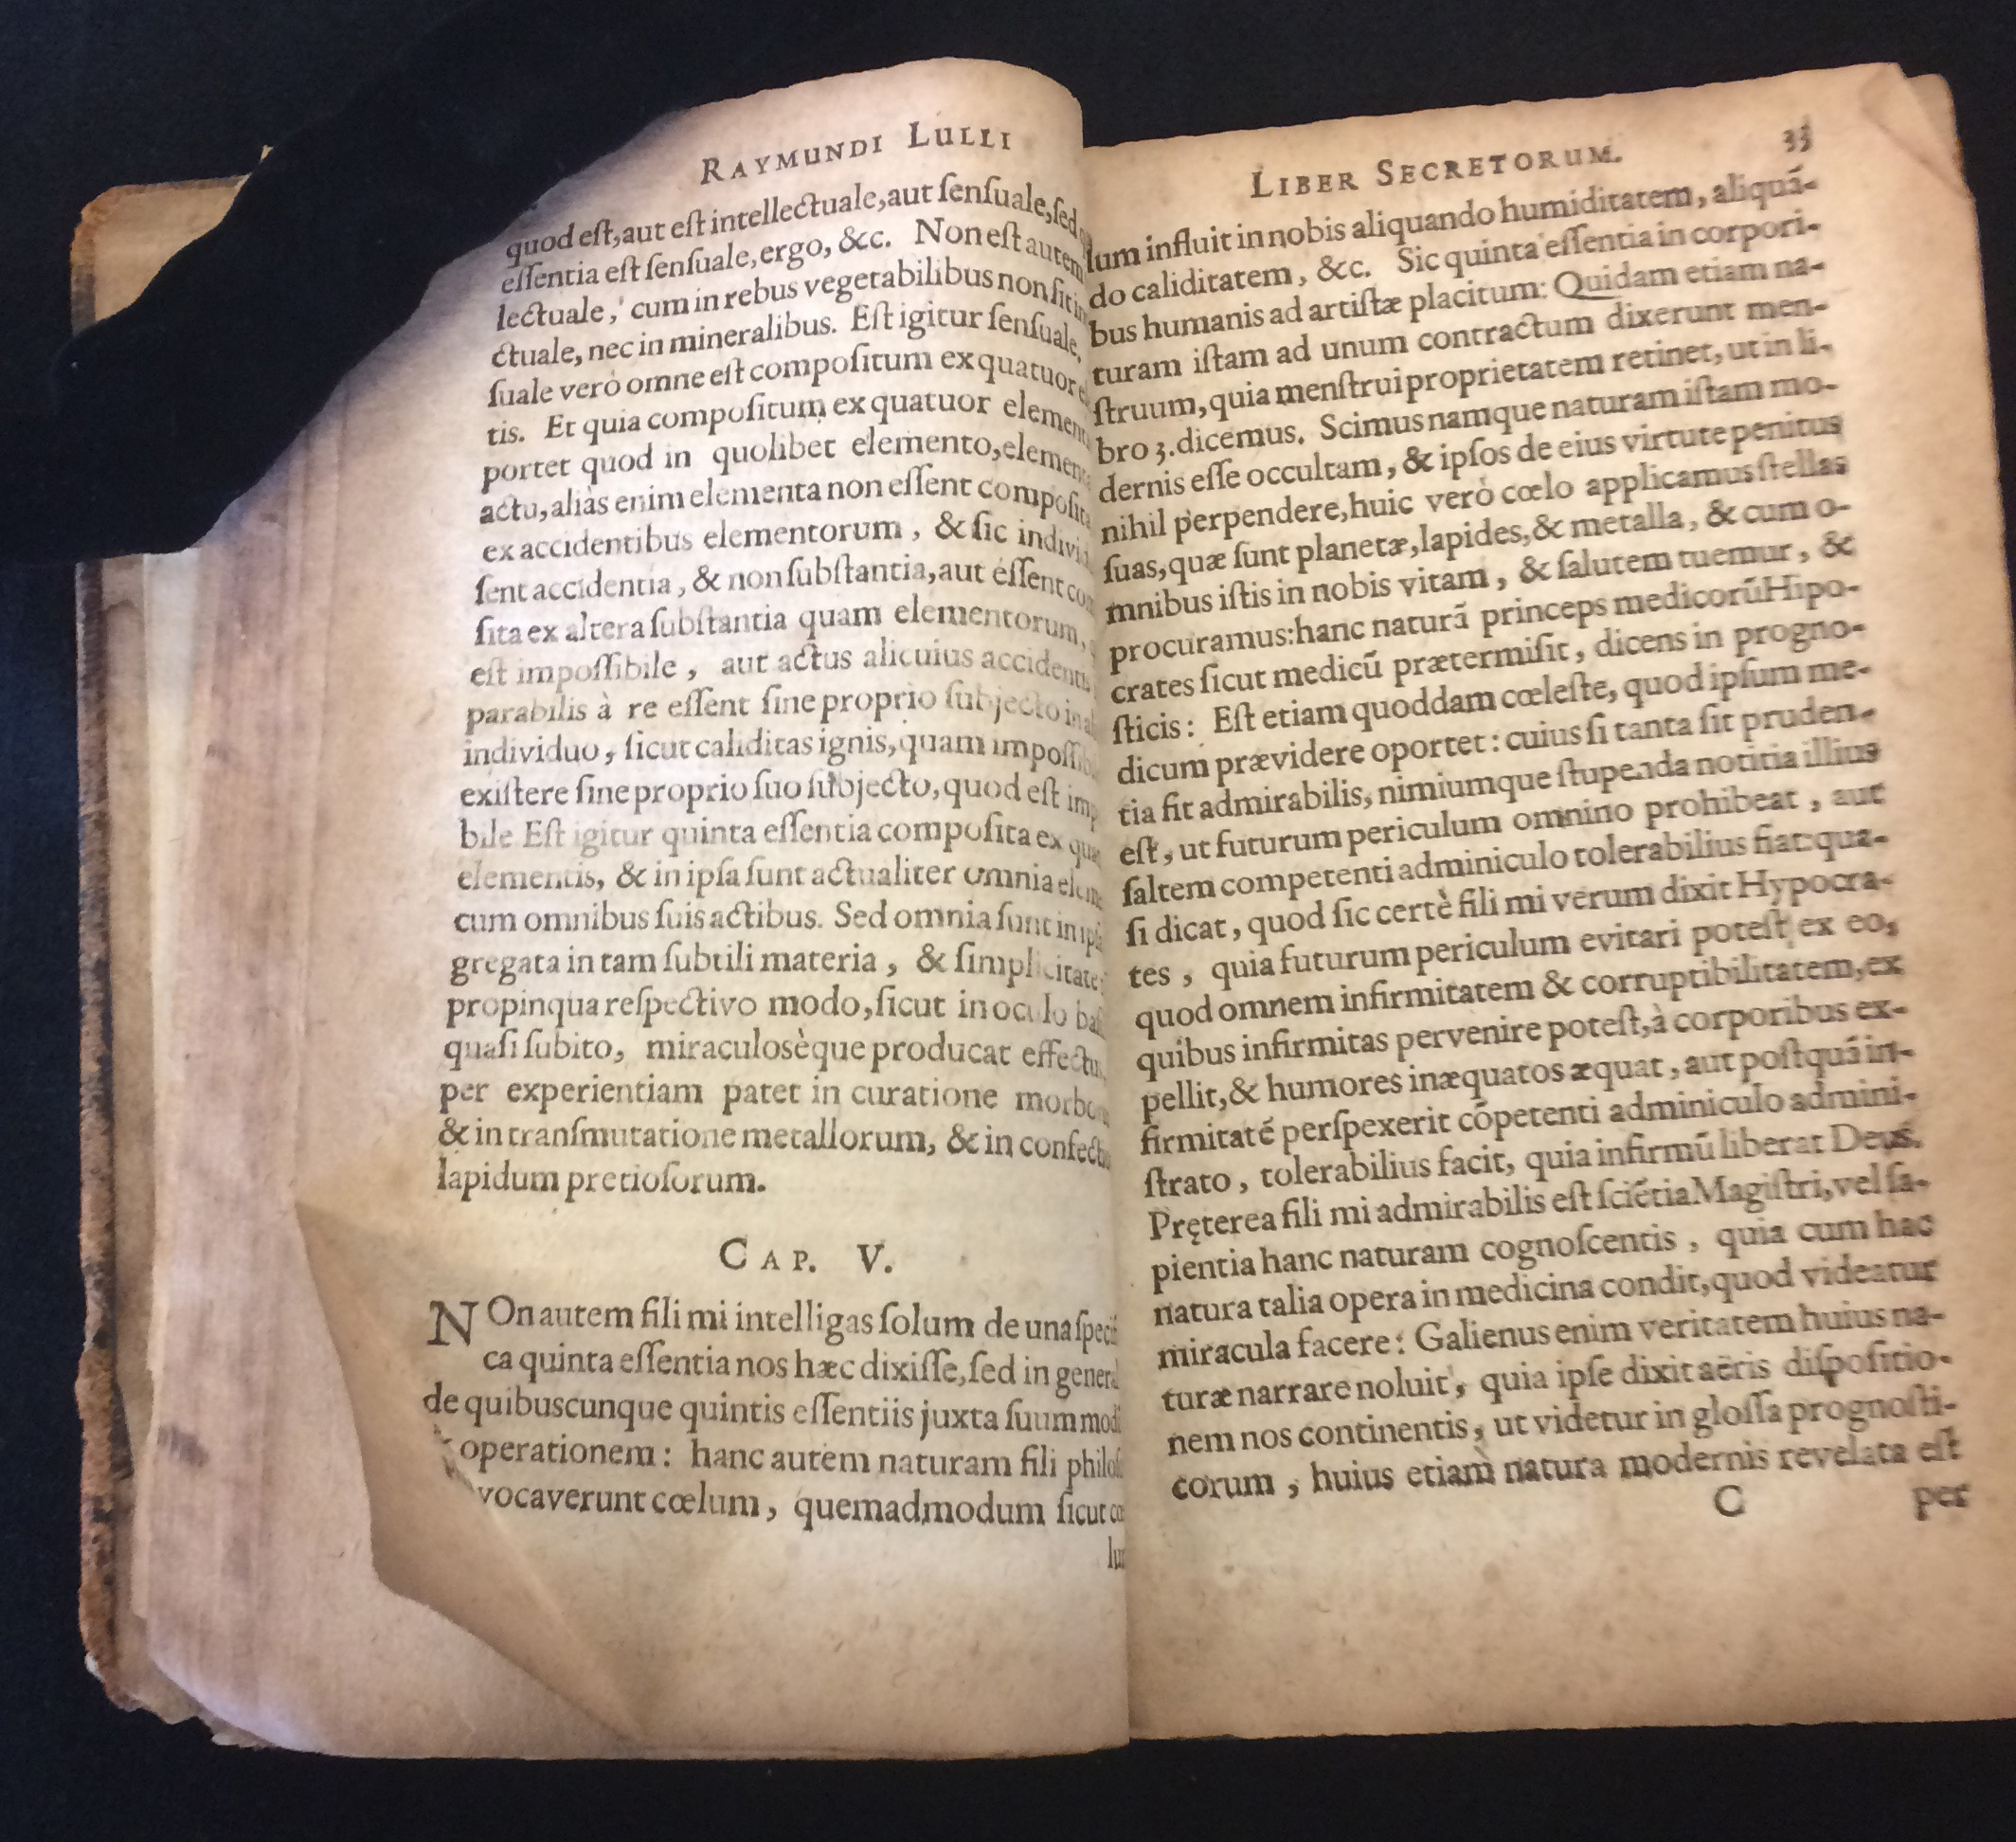 Dog-eared page in Pseudo Ramon Llull. Tractatus brevis et eruditus, de conservatione vitae; Liber secretorum seu quintae essentiae. Straßburg: Lazarus Zetnerus, 1616